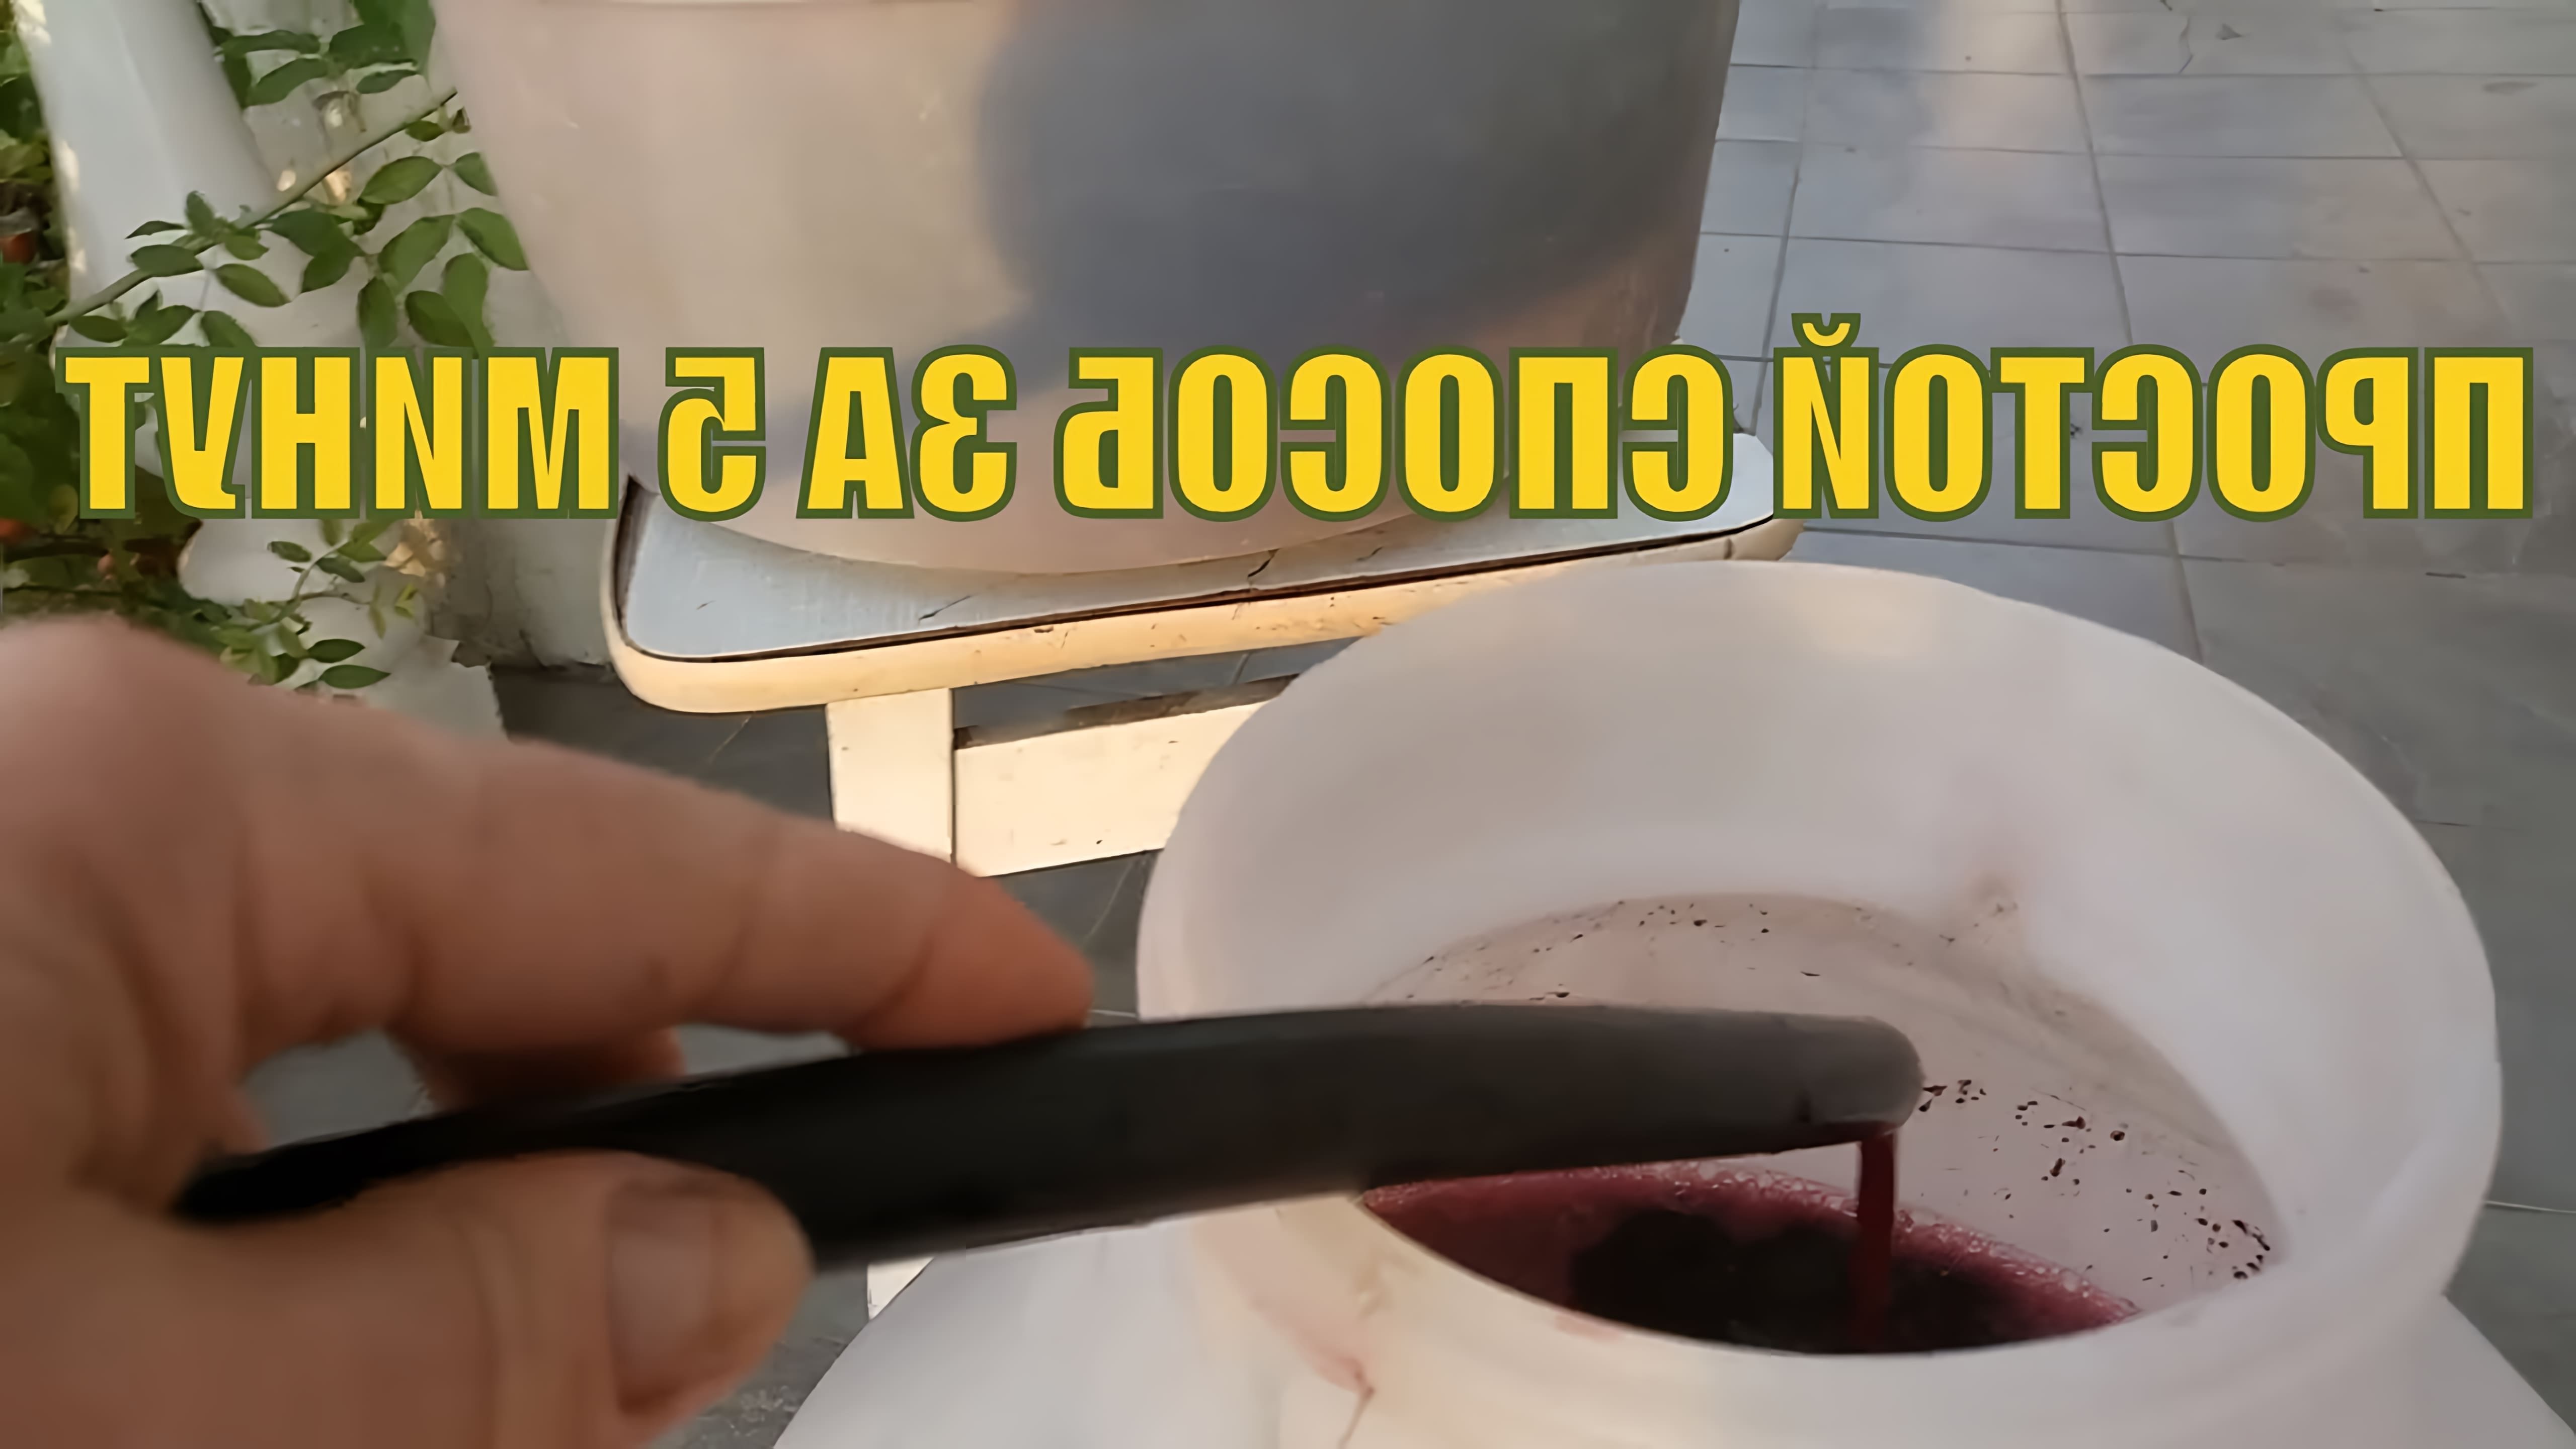 В данном видео демонстрируется простой и быстрый способ отделения мезги от сока винограда